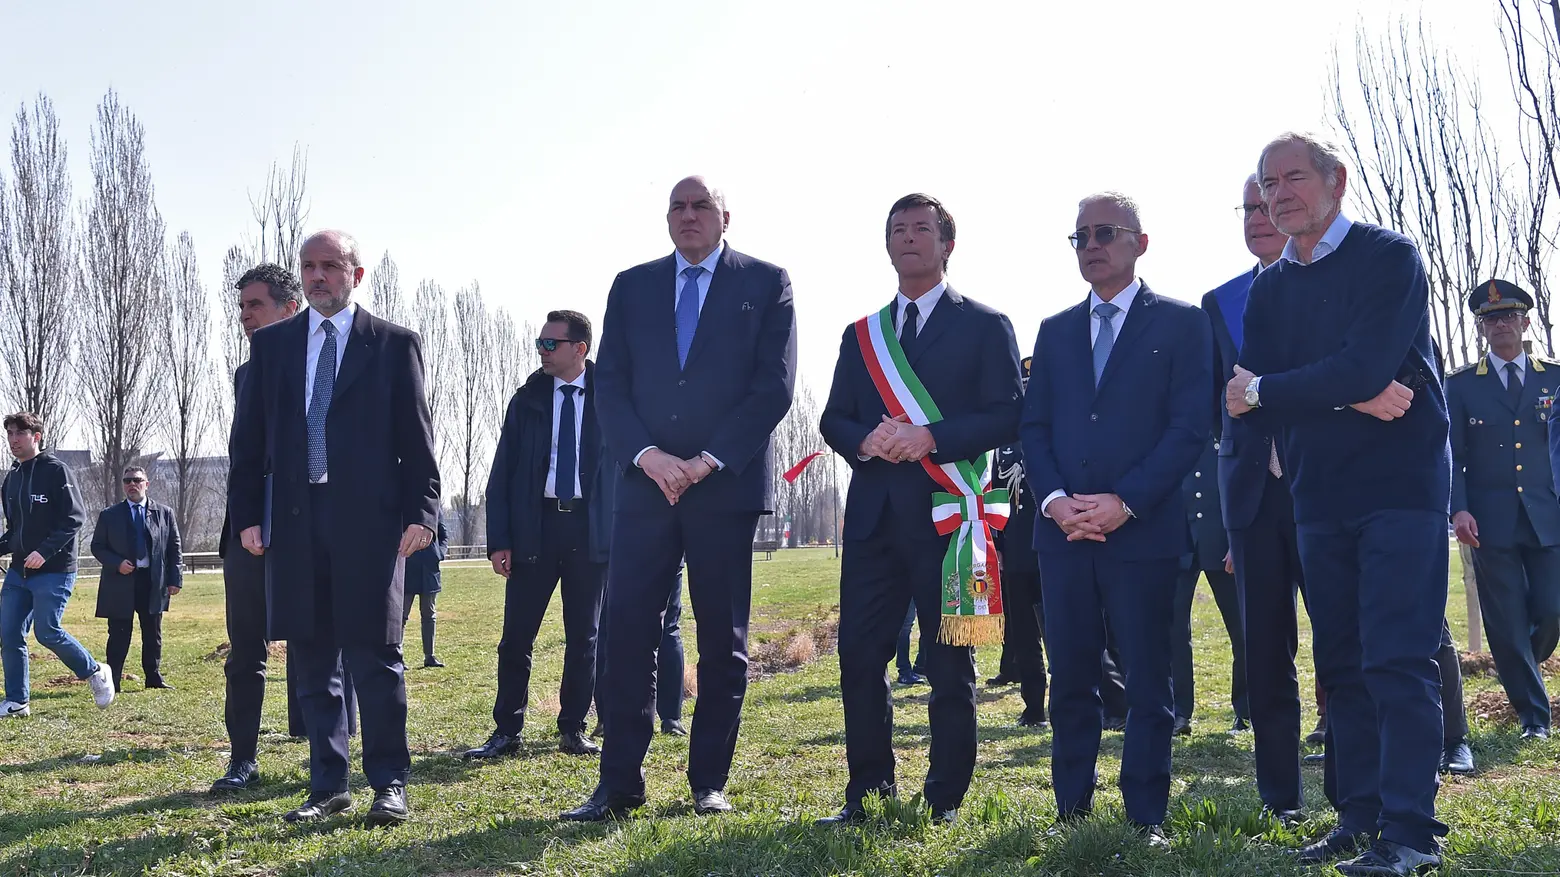 Le autorità che hanno presenziato alla cerimonia in ricordo delle vittime del Covid-19 a Bergamo